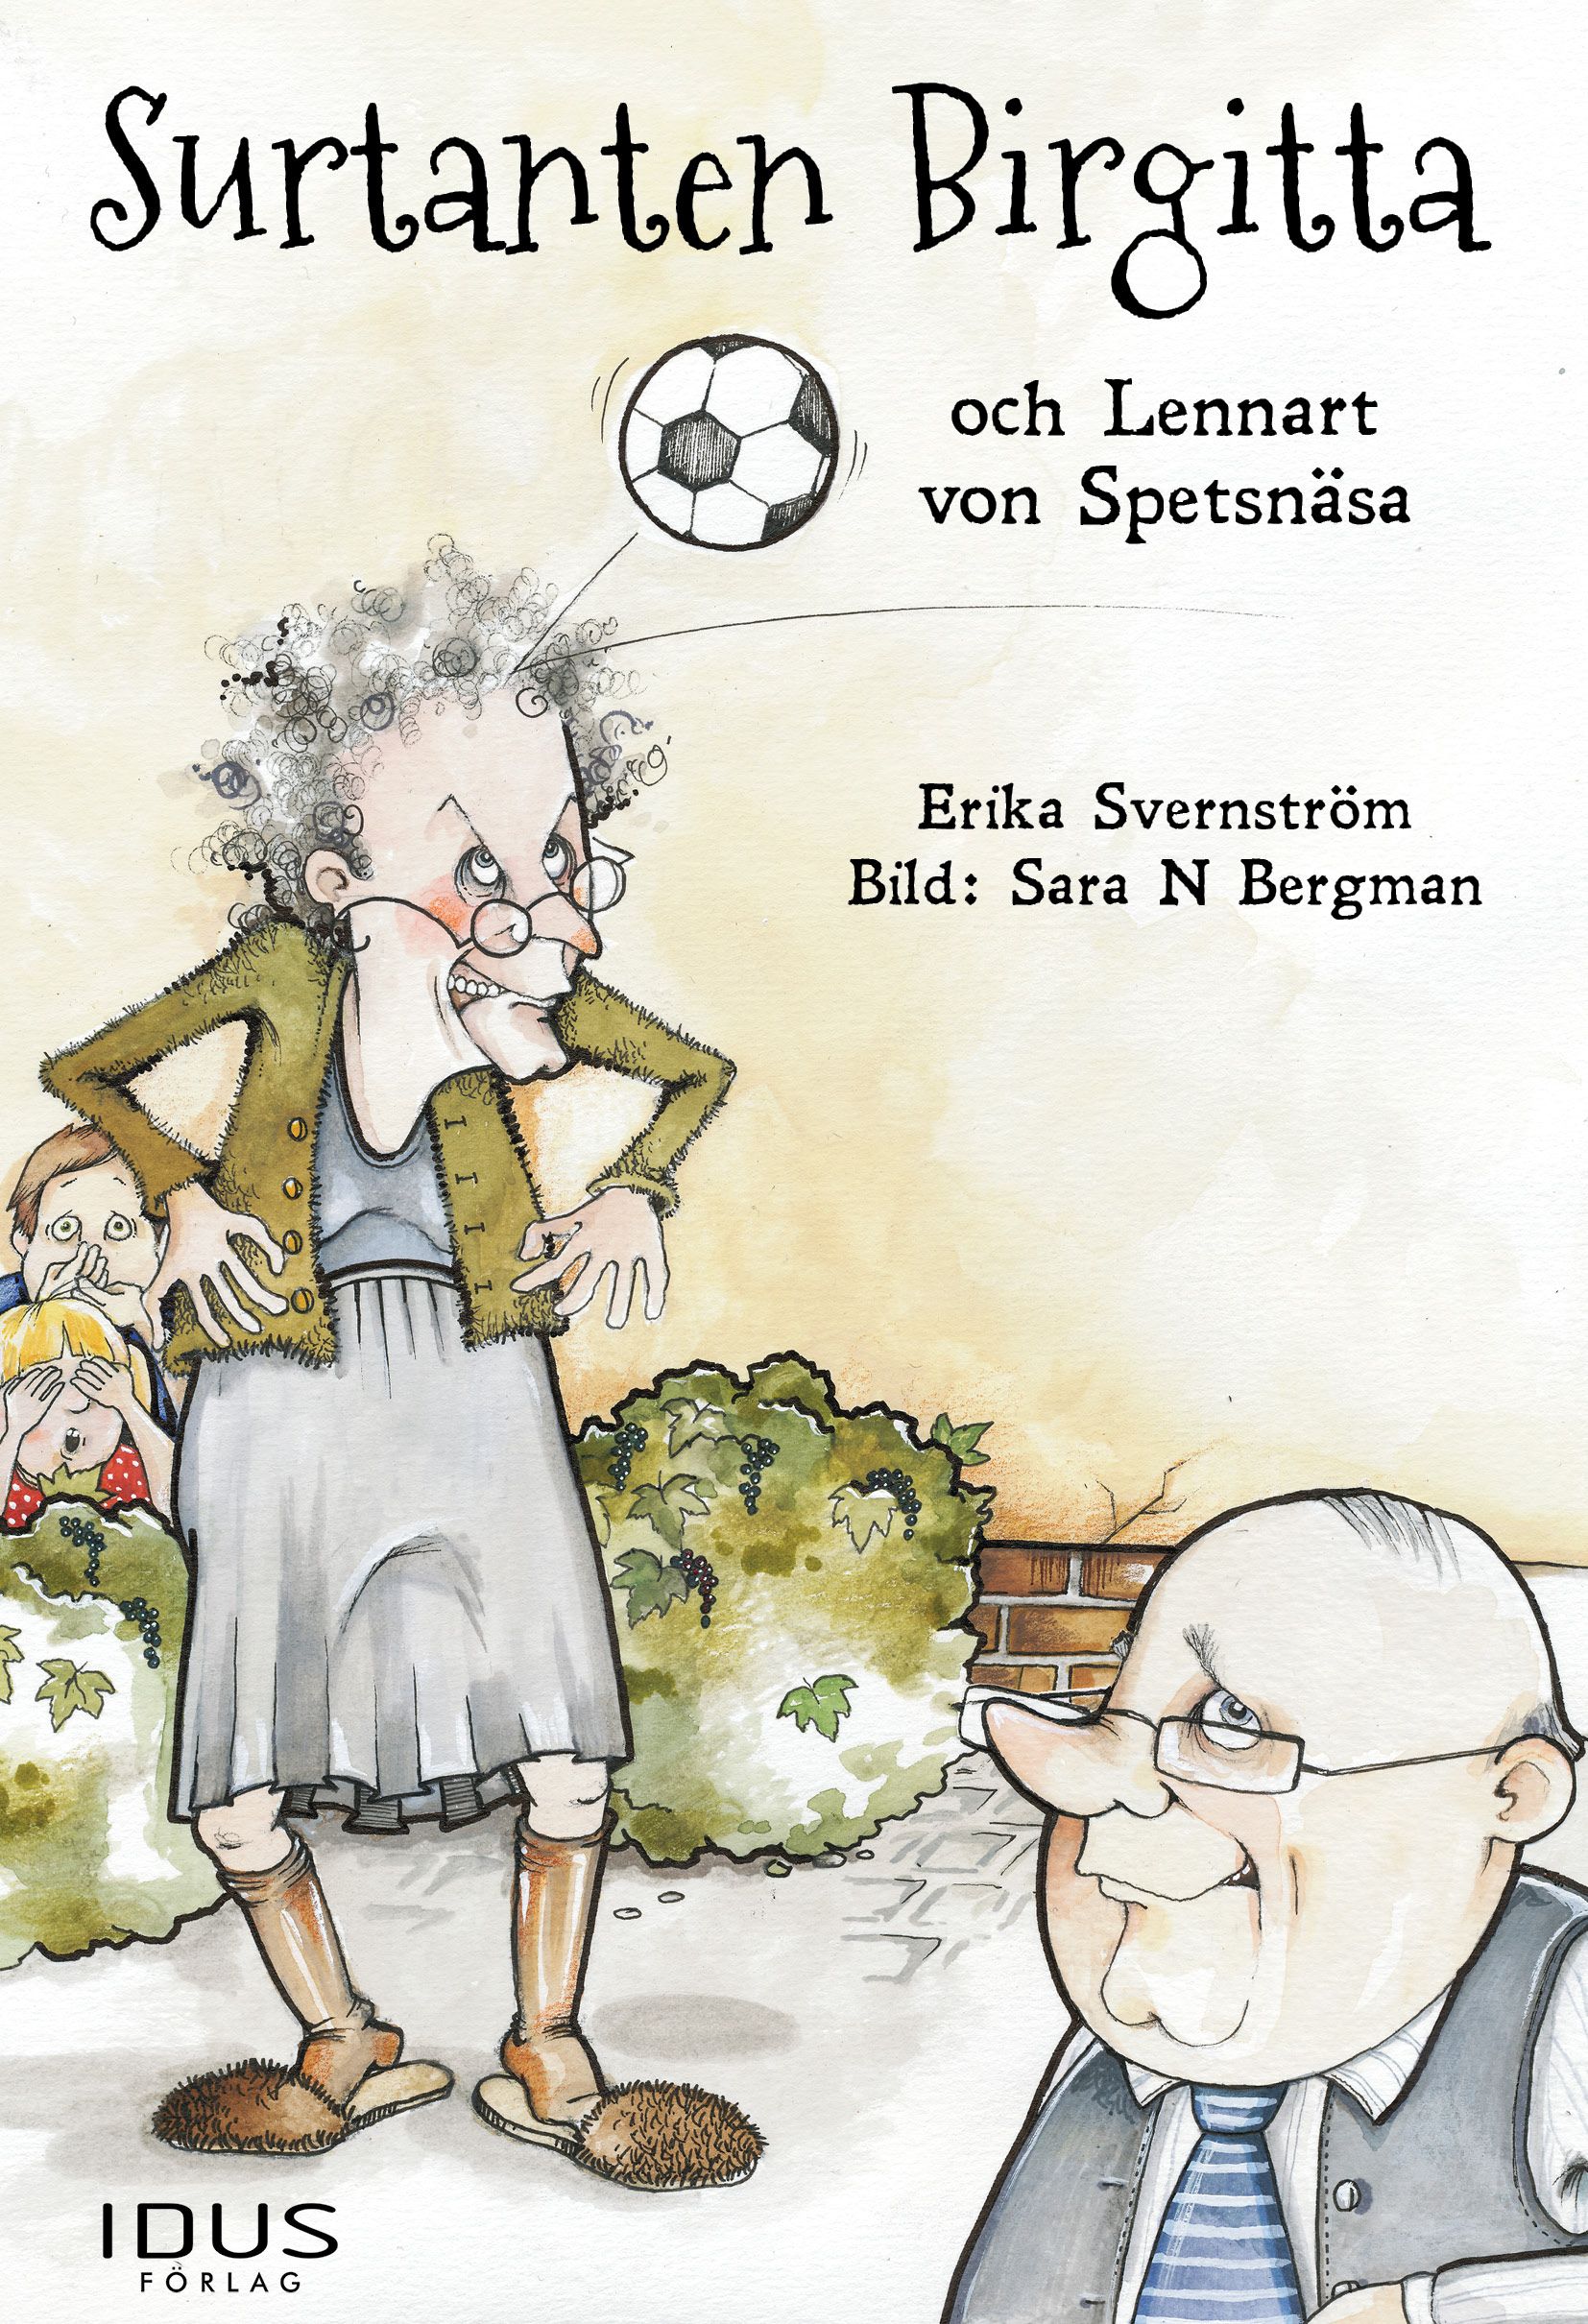 Surtanten Birgitta och Lennart von Spetsnäsa, eBook by Erika Svernström